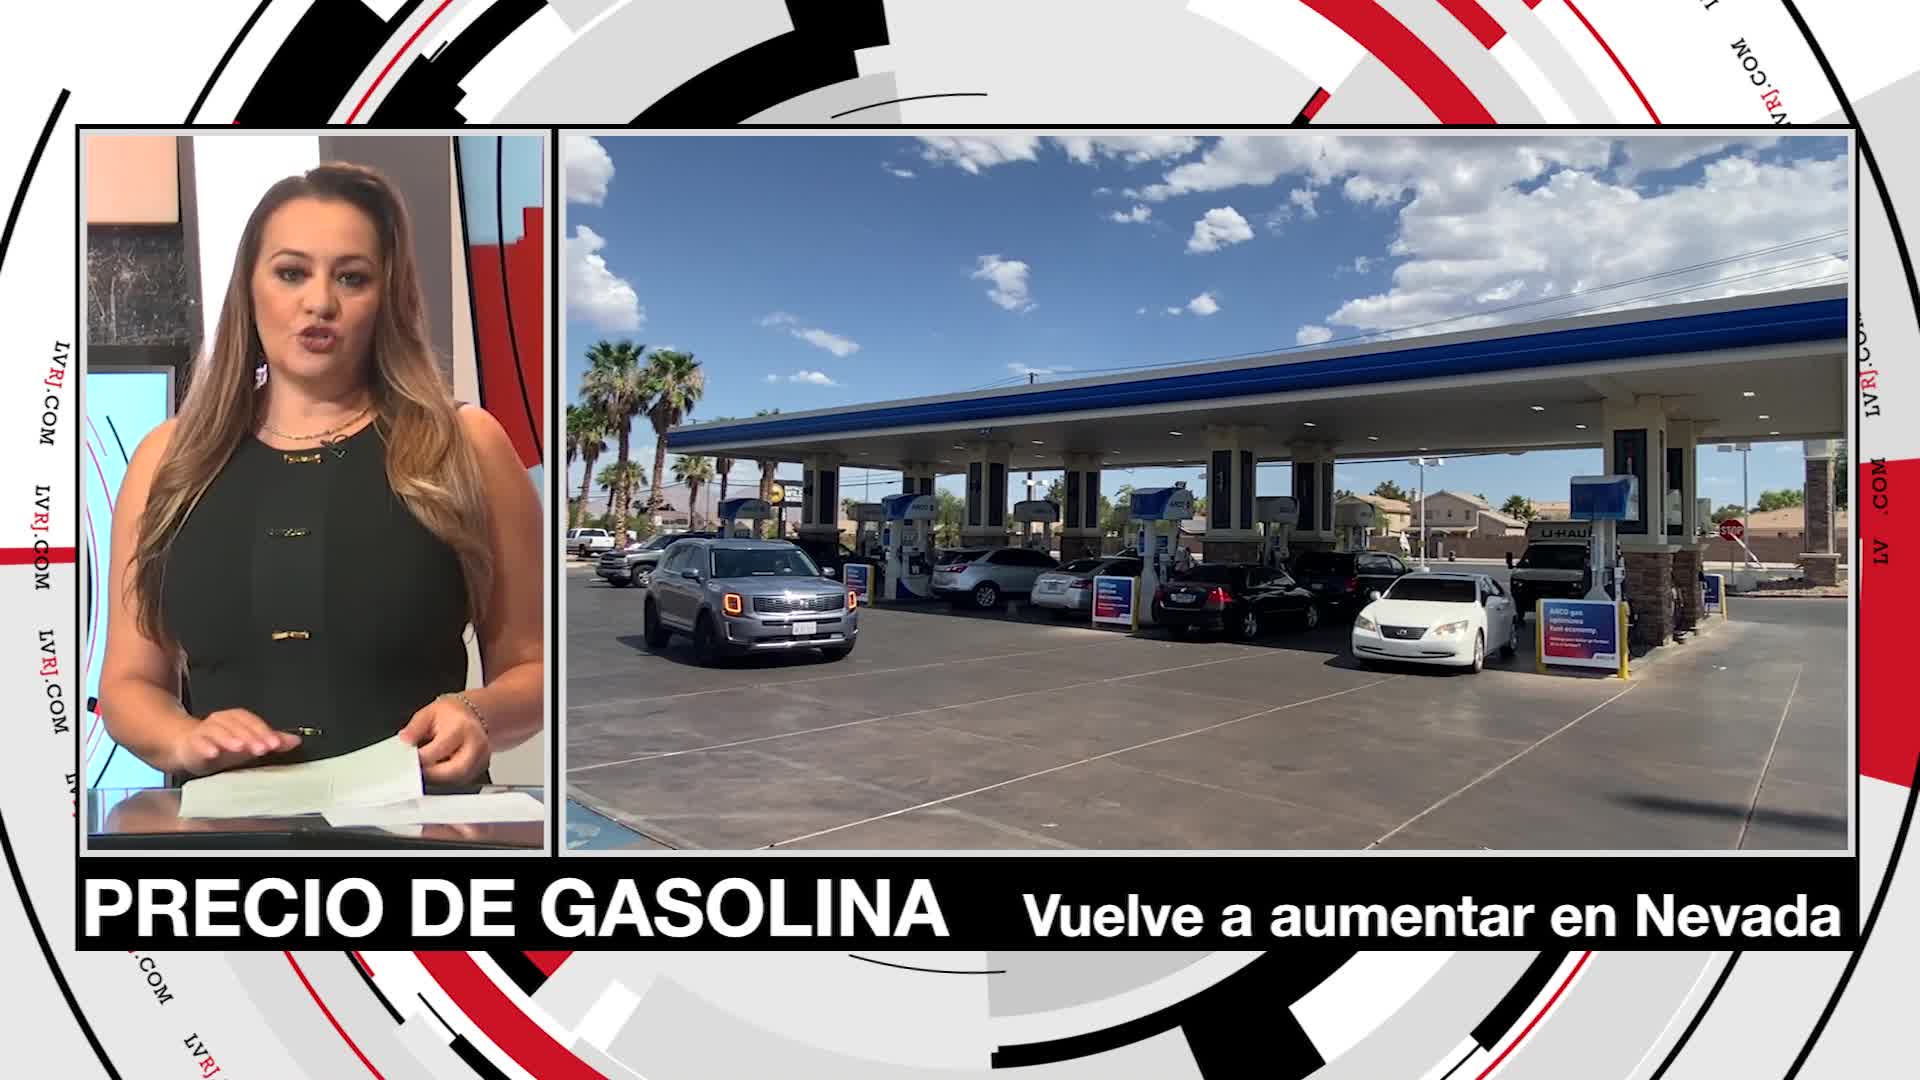 Gasolina en Nevada vuelve a aumentar tras descenso en precios